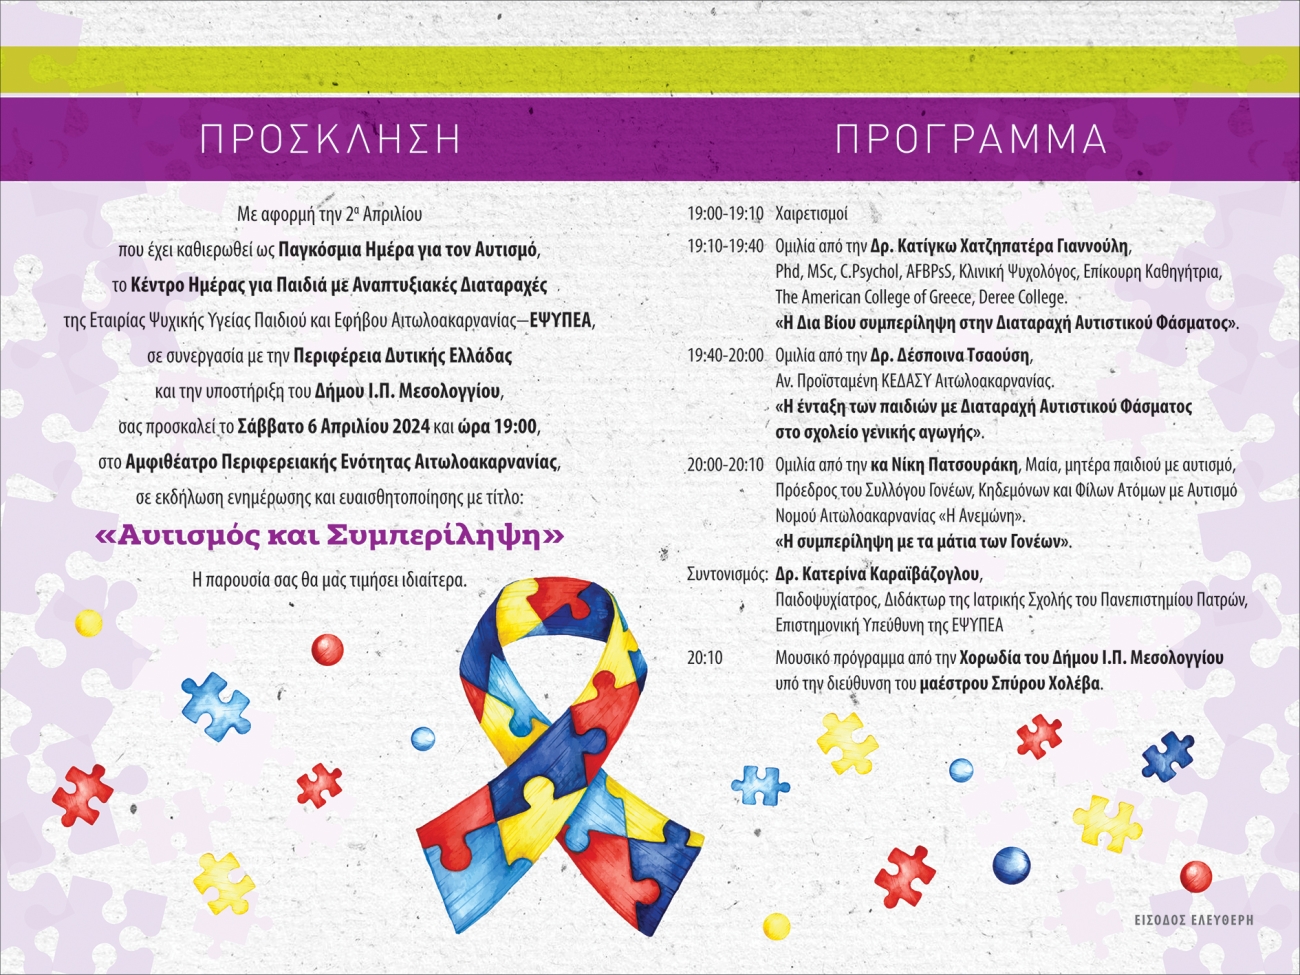 Πρόγραμμα εκδήλωσης της ΕΨΥΠΕΑ για την εκδήλωση για τον αυτισμό στις 6/4/2024.